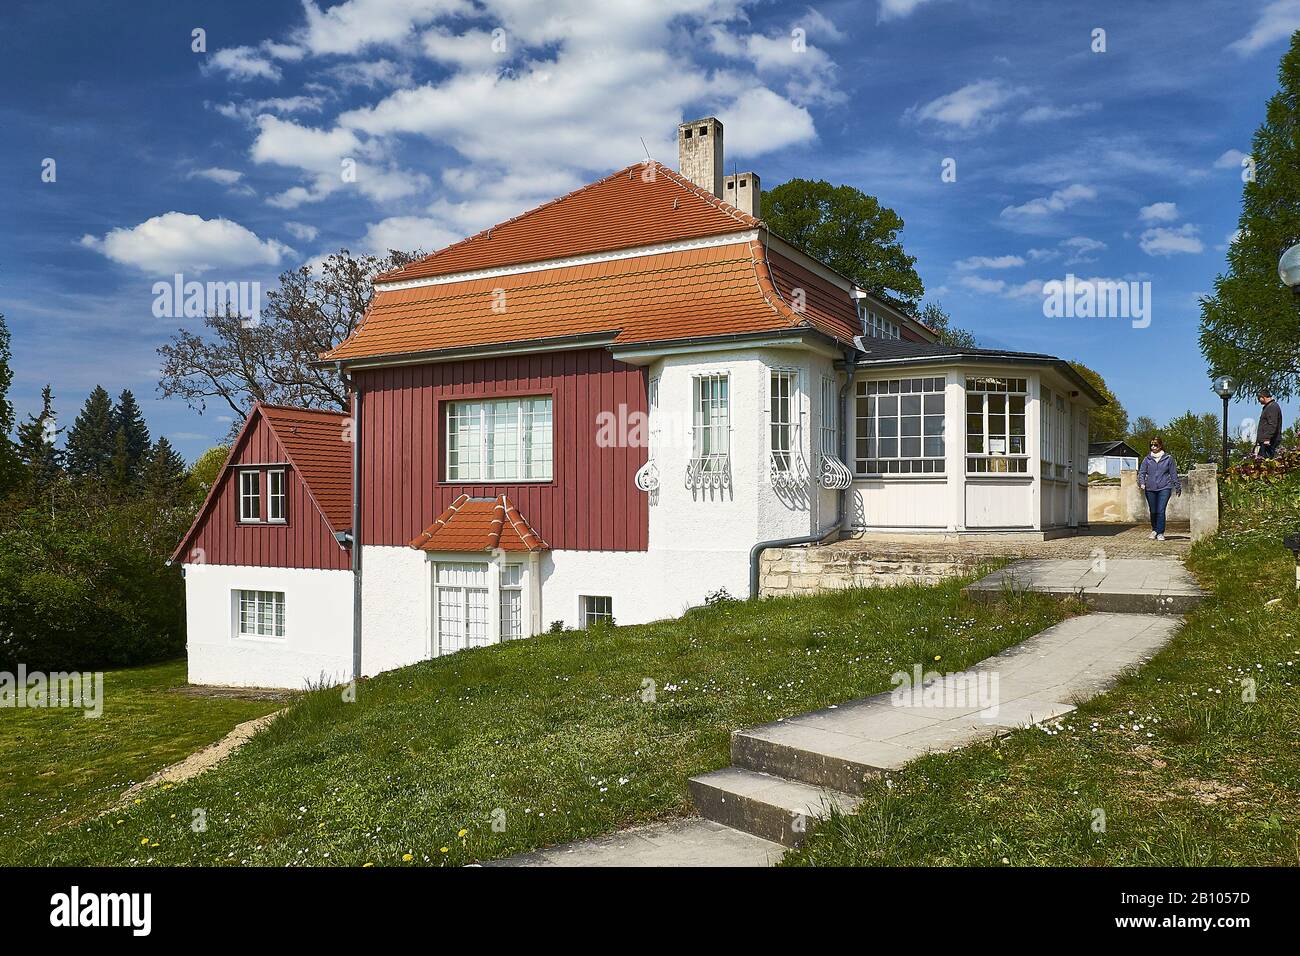 Max Klinger's residential building in Großjena, Saxony-Anhalt, Germany Stock Photo